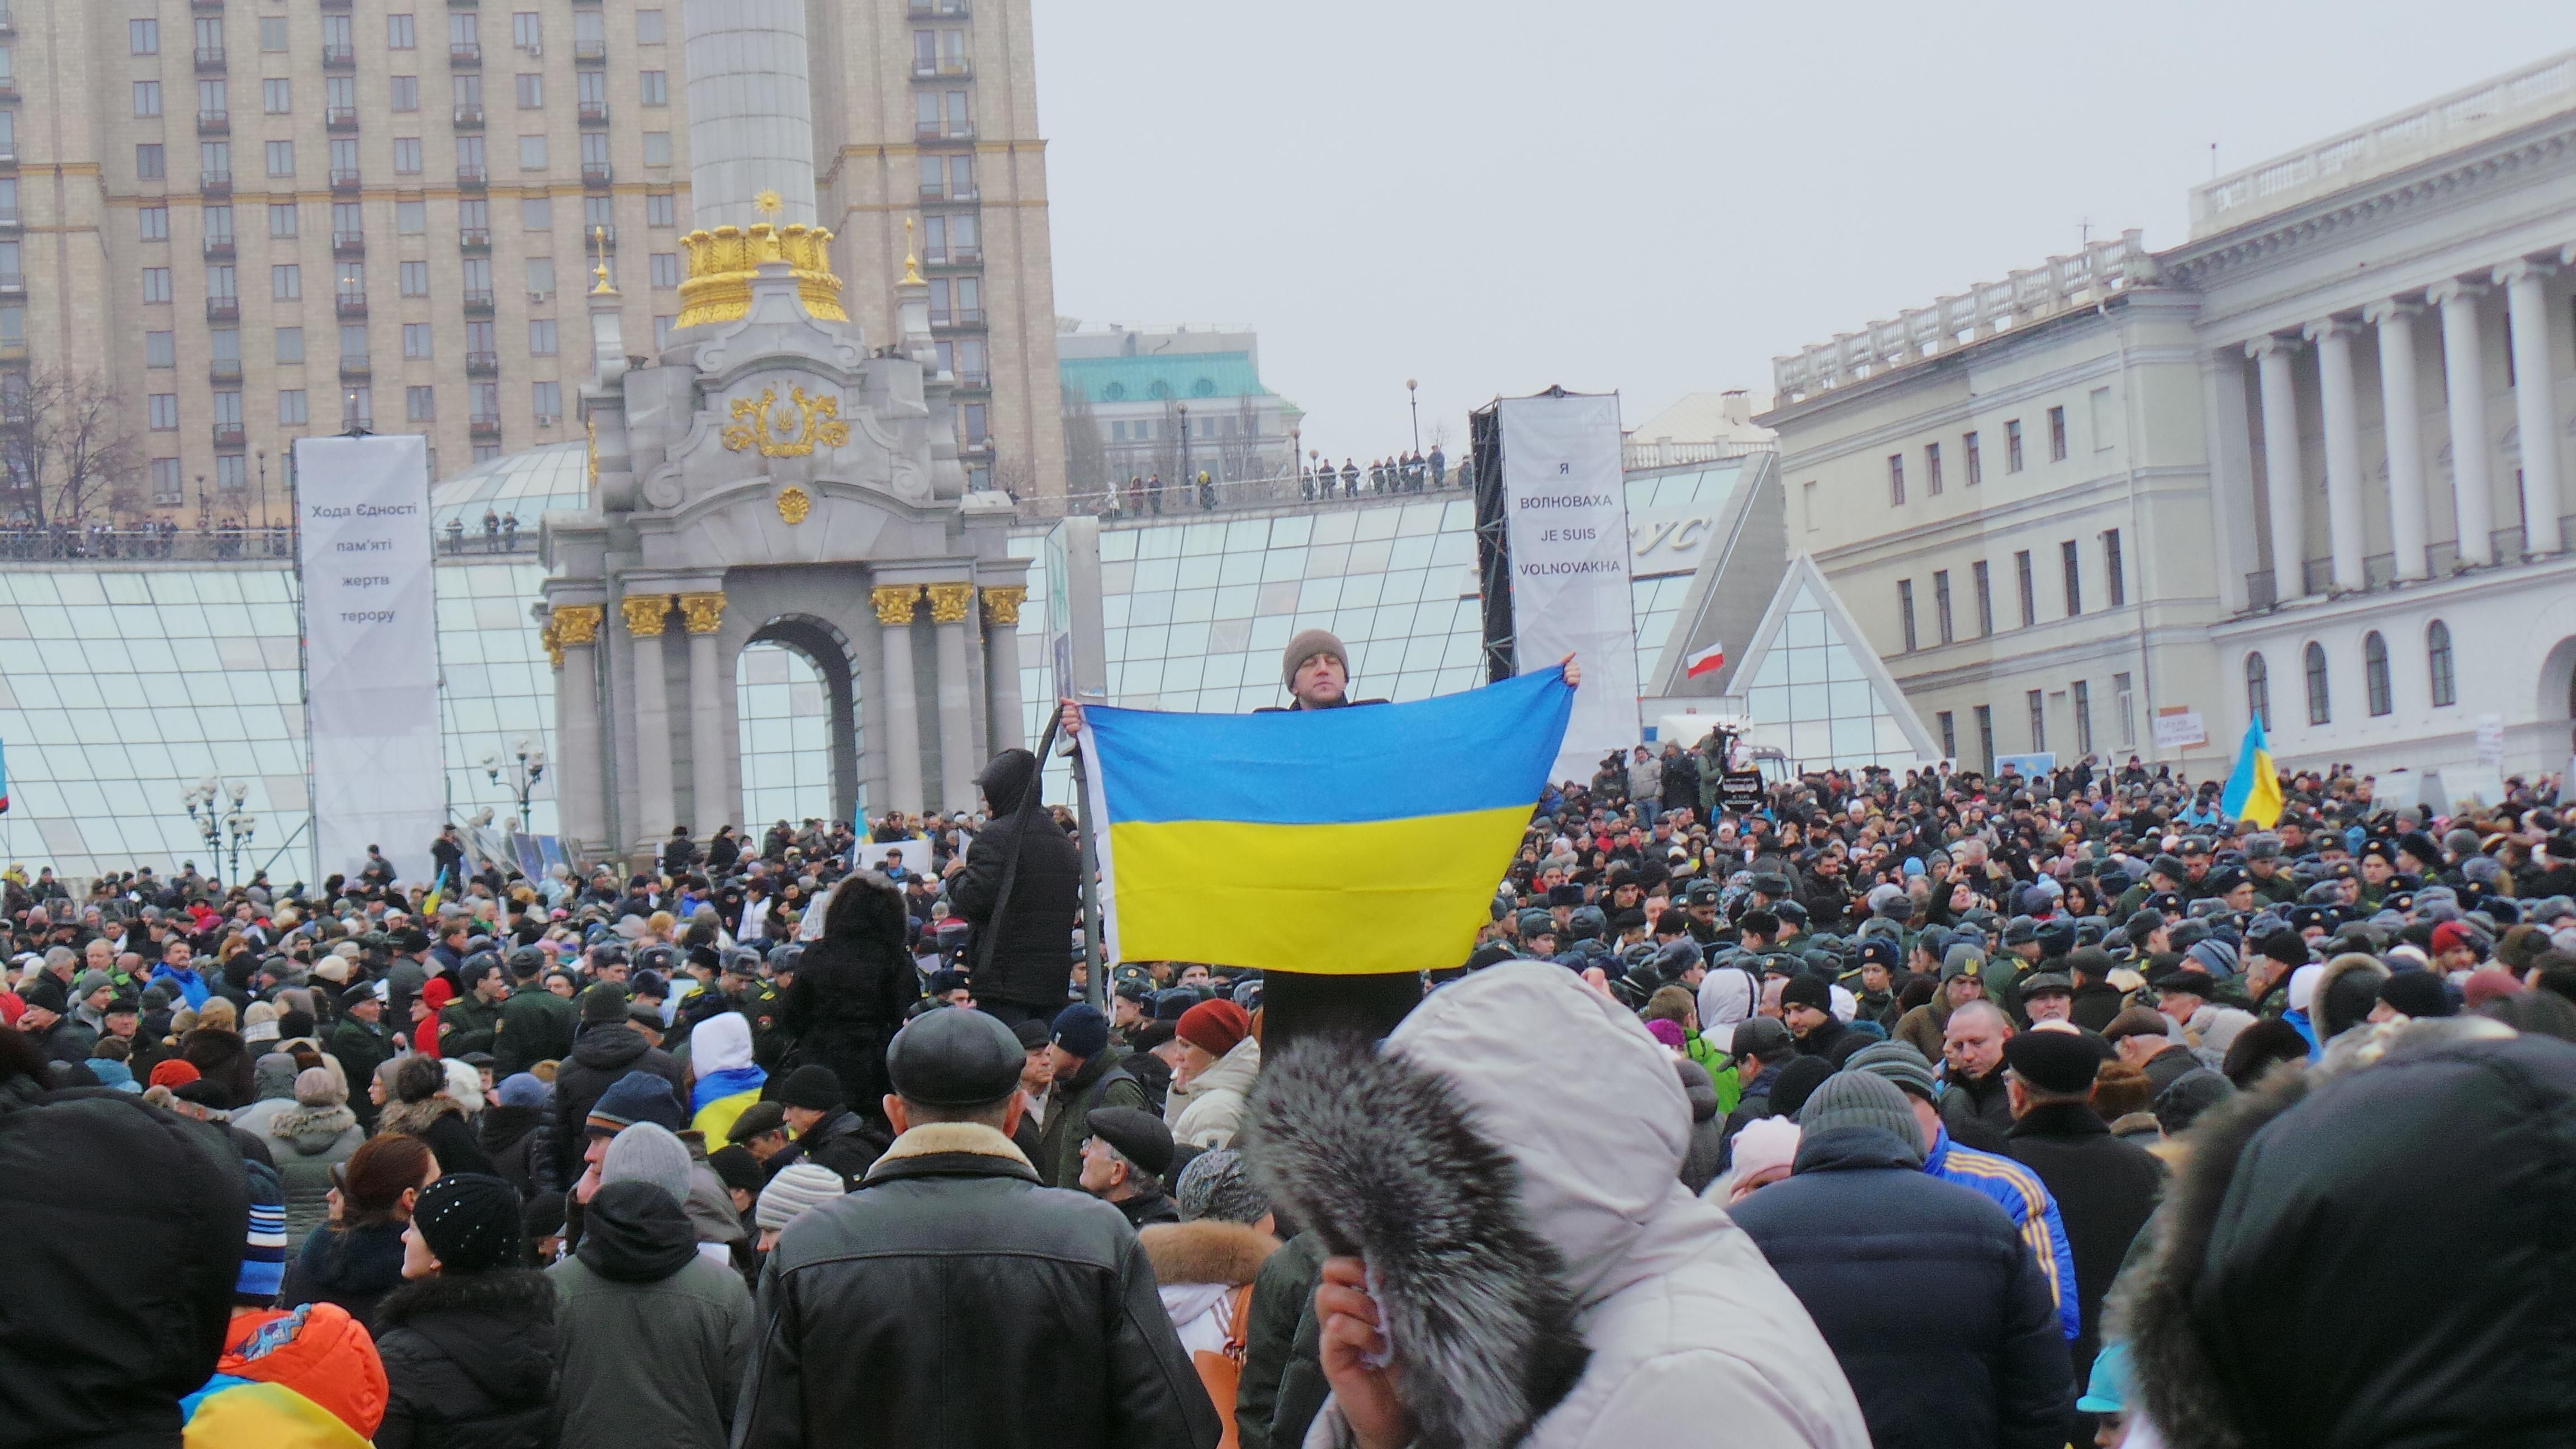 "Я Волноваха! Я Україна!" : як у Києві пройшов марш солідарності